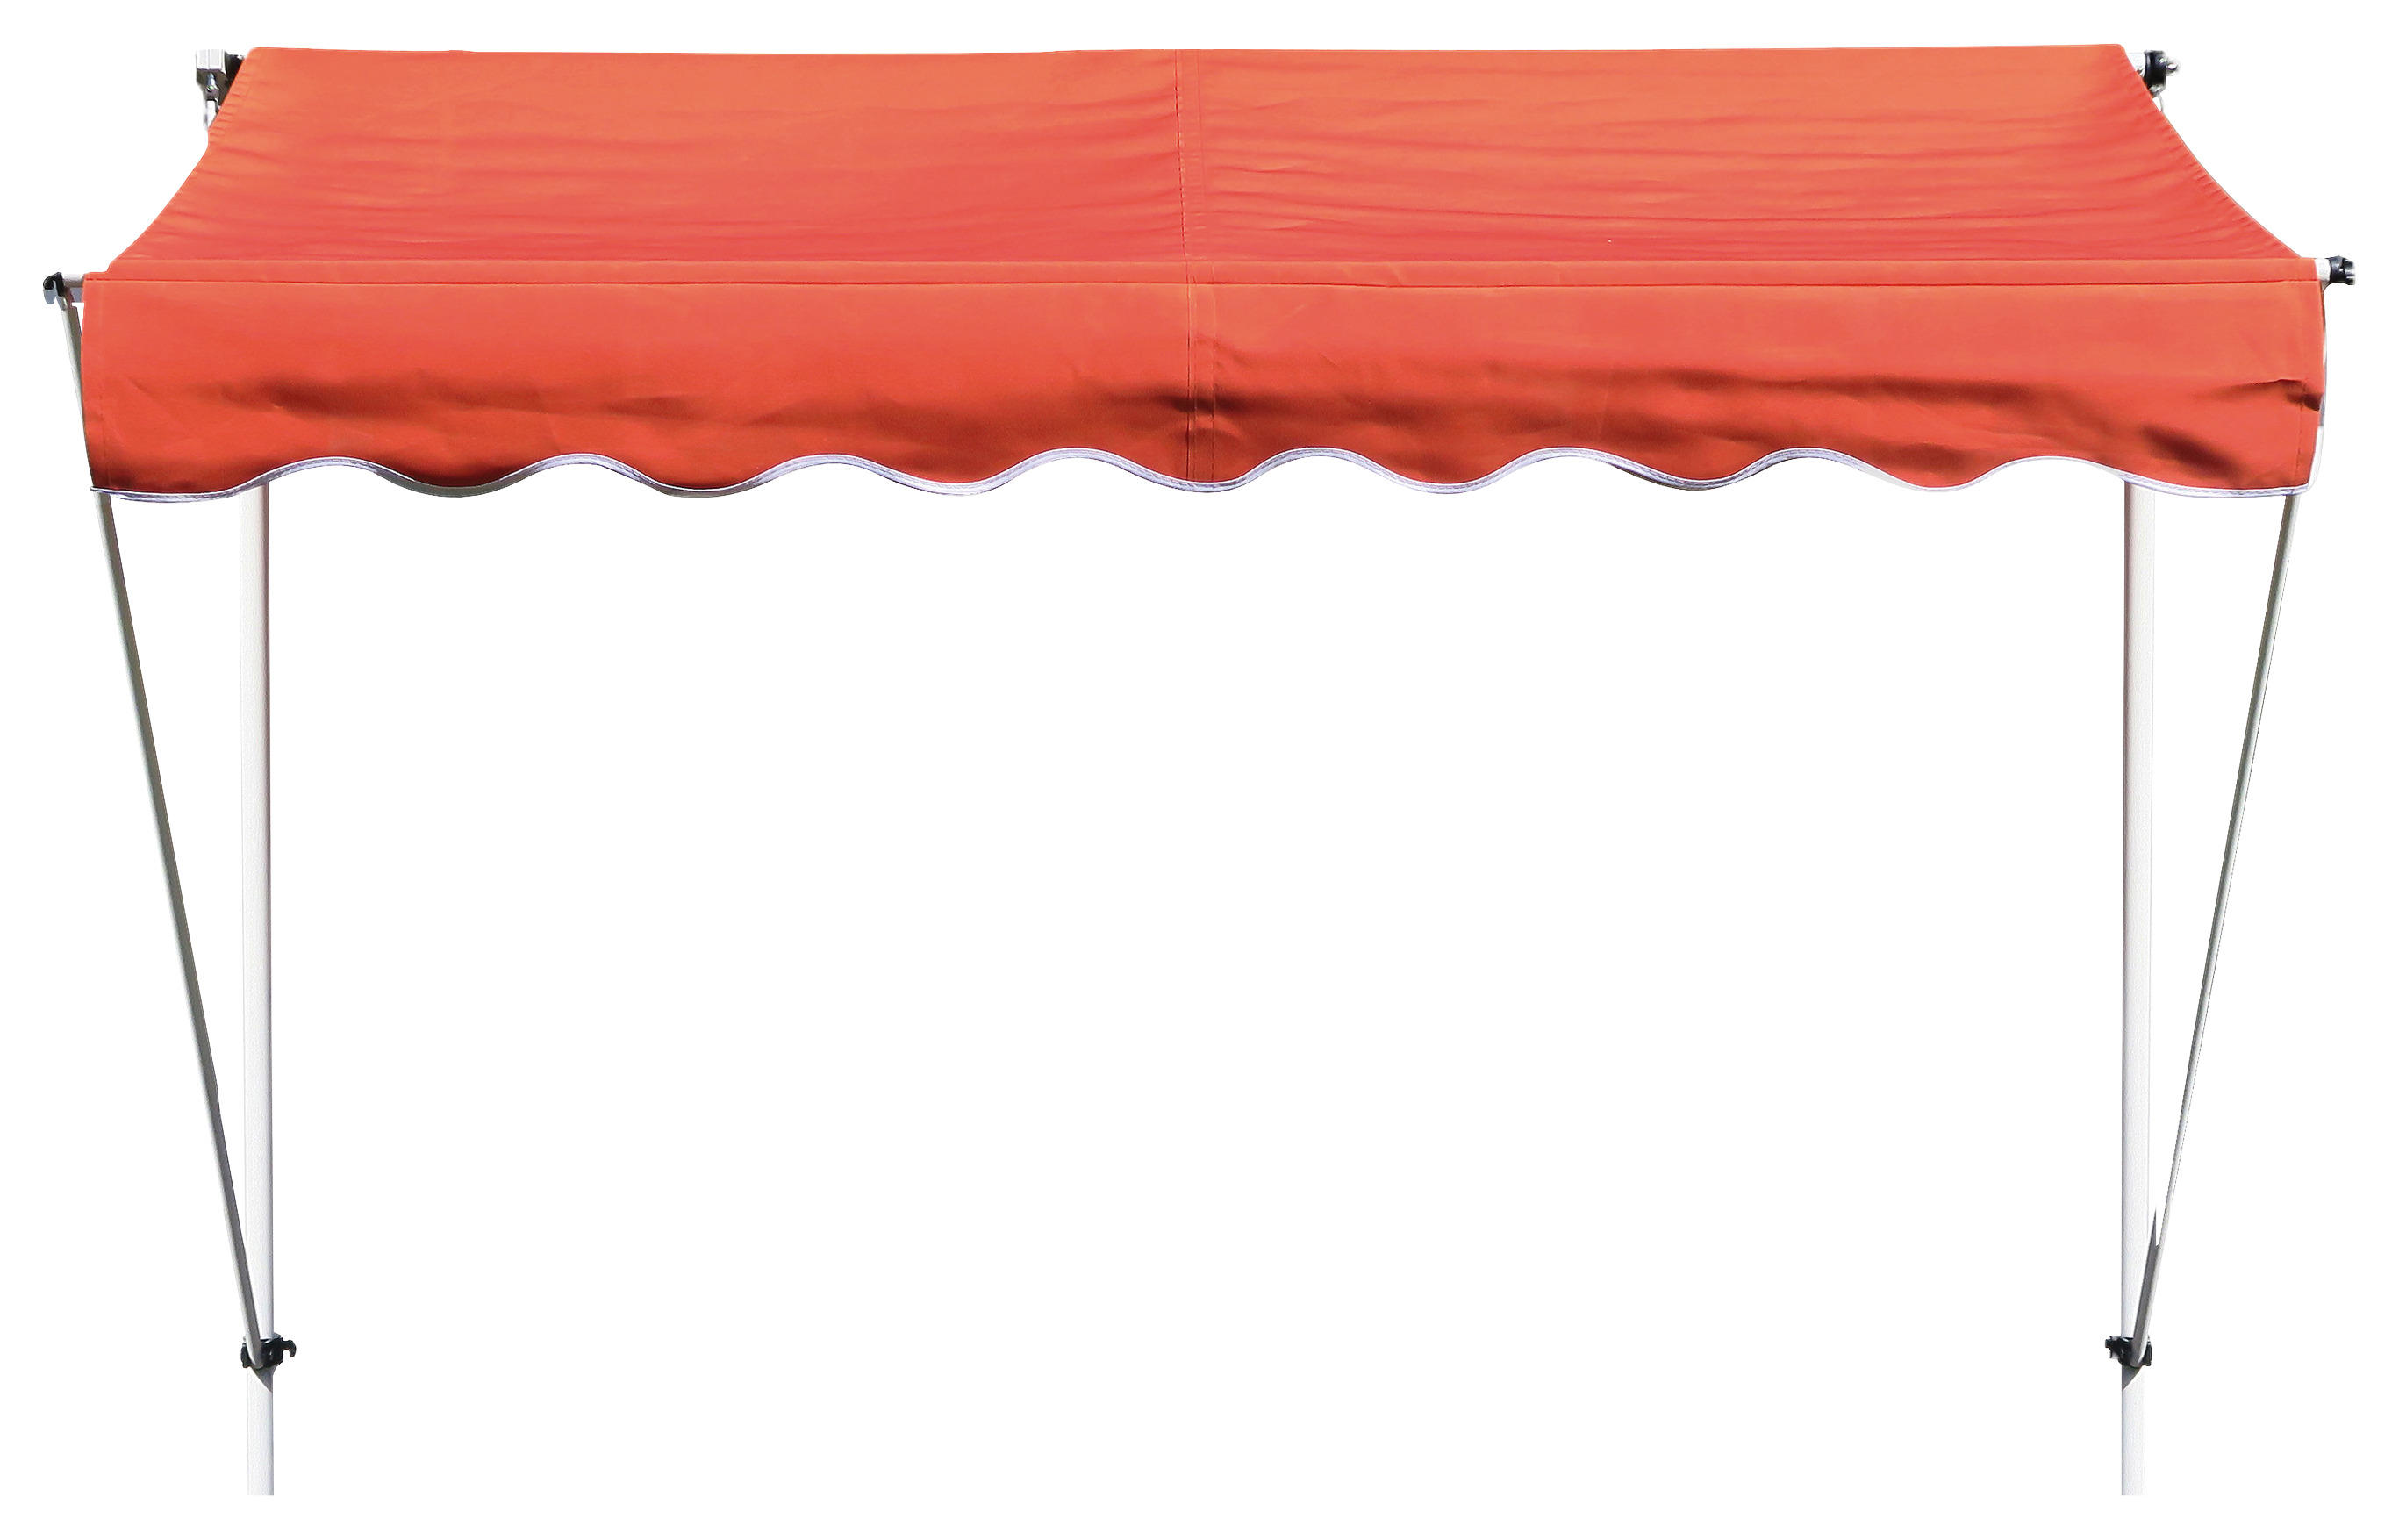 Klemm-markise Ontario Orange B/l: Ca. 255x130 Cm Ontario - orange/weiß (255,00/130,00cm)